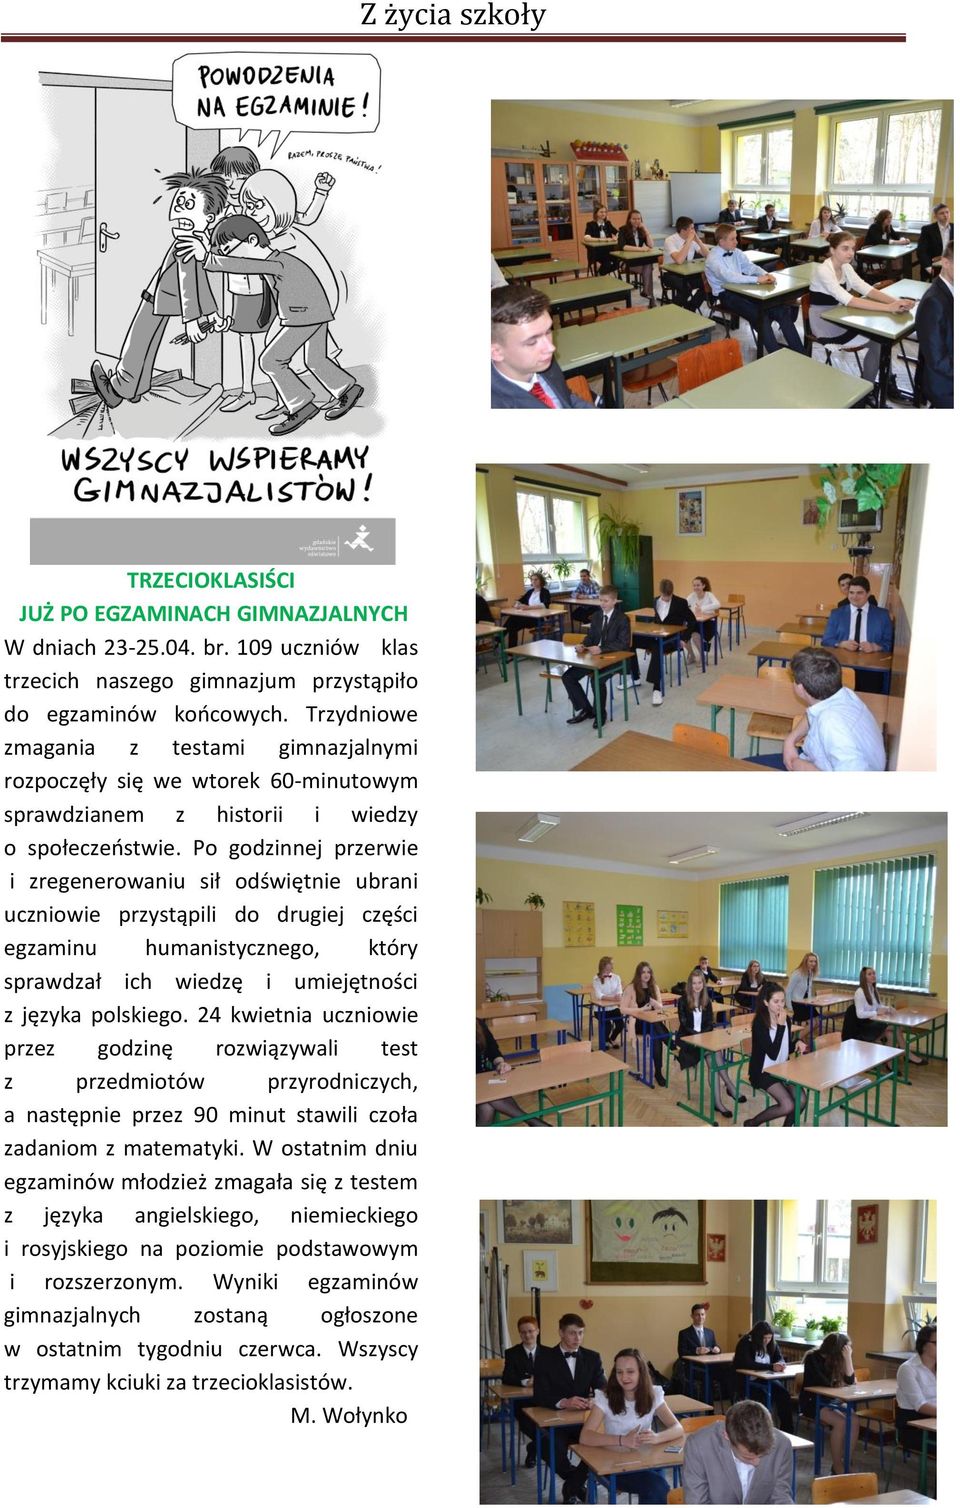 Po godzinnej przerwie i zregenerowaniu sił odświętnie ubrani uczniowie przystąpili do drugiej części egzaminu humanistycznego, który sprawdzał ich wiedzę i umiejętności z języka polskiego.